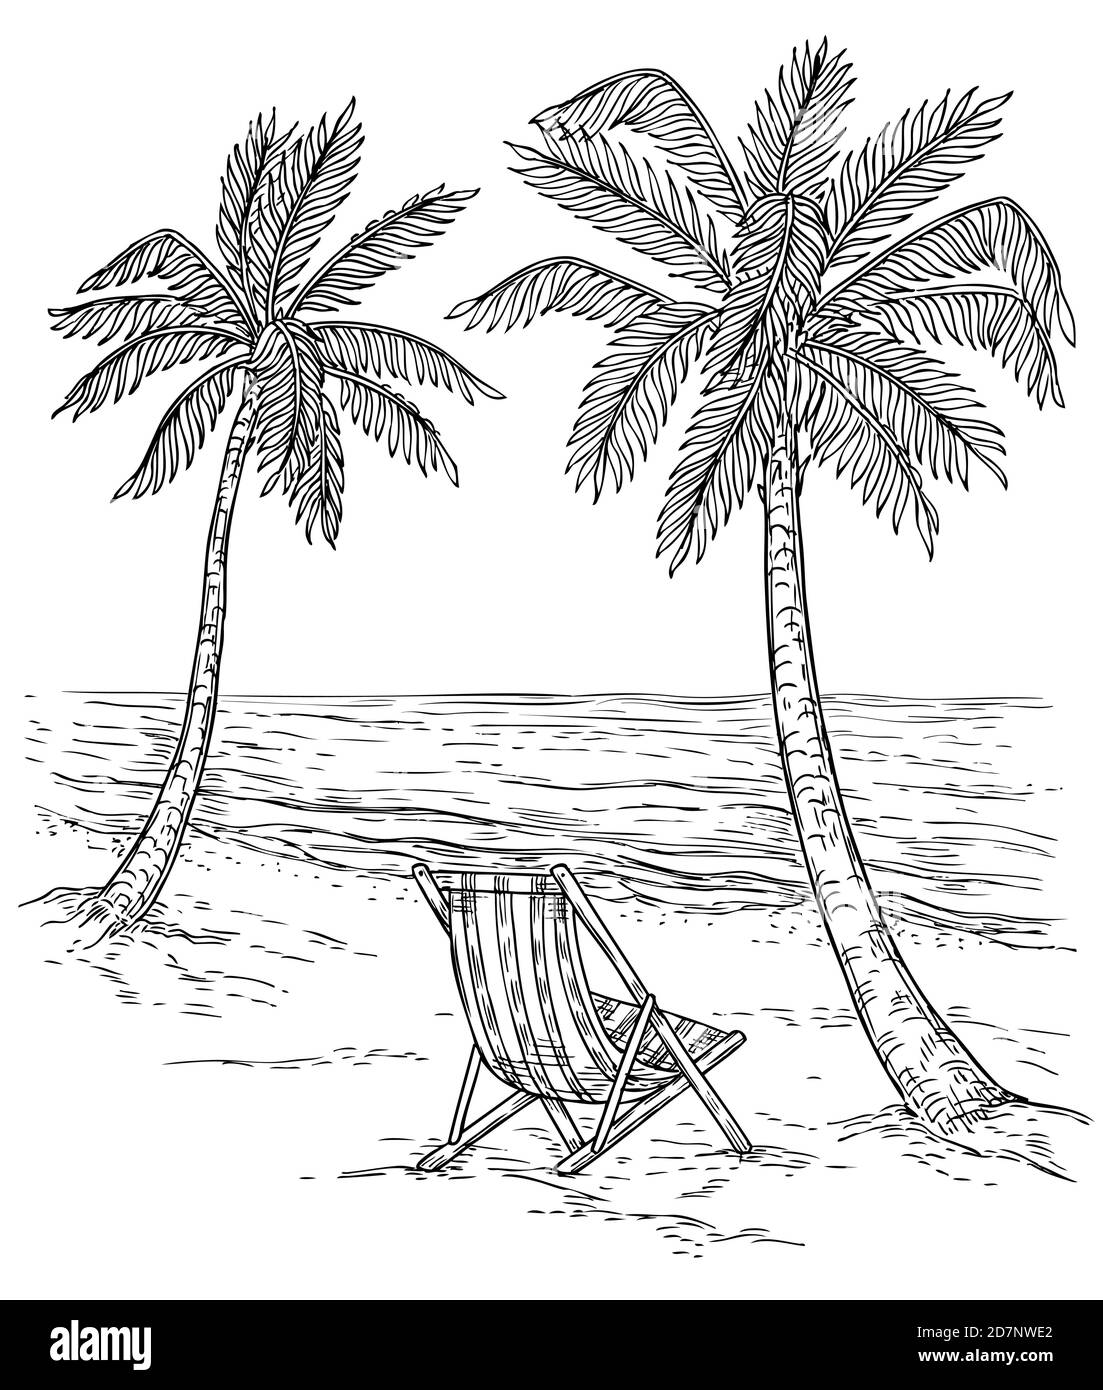 Dessinez le paysage de palmiers. Plage tropicale de palmiers, arbres exotiques et vagues de mer. Vintage main dessin vecteur relaxant arrière-plan d'été. Plage tropicale exotique d'été, paysage de mer et illustration de palmiers Illustration de Vecteur